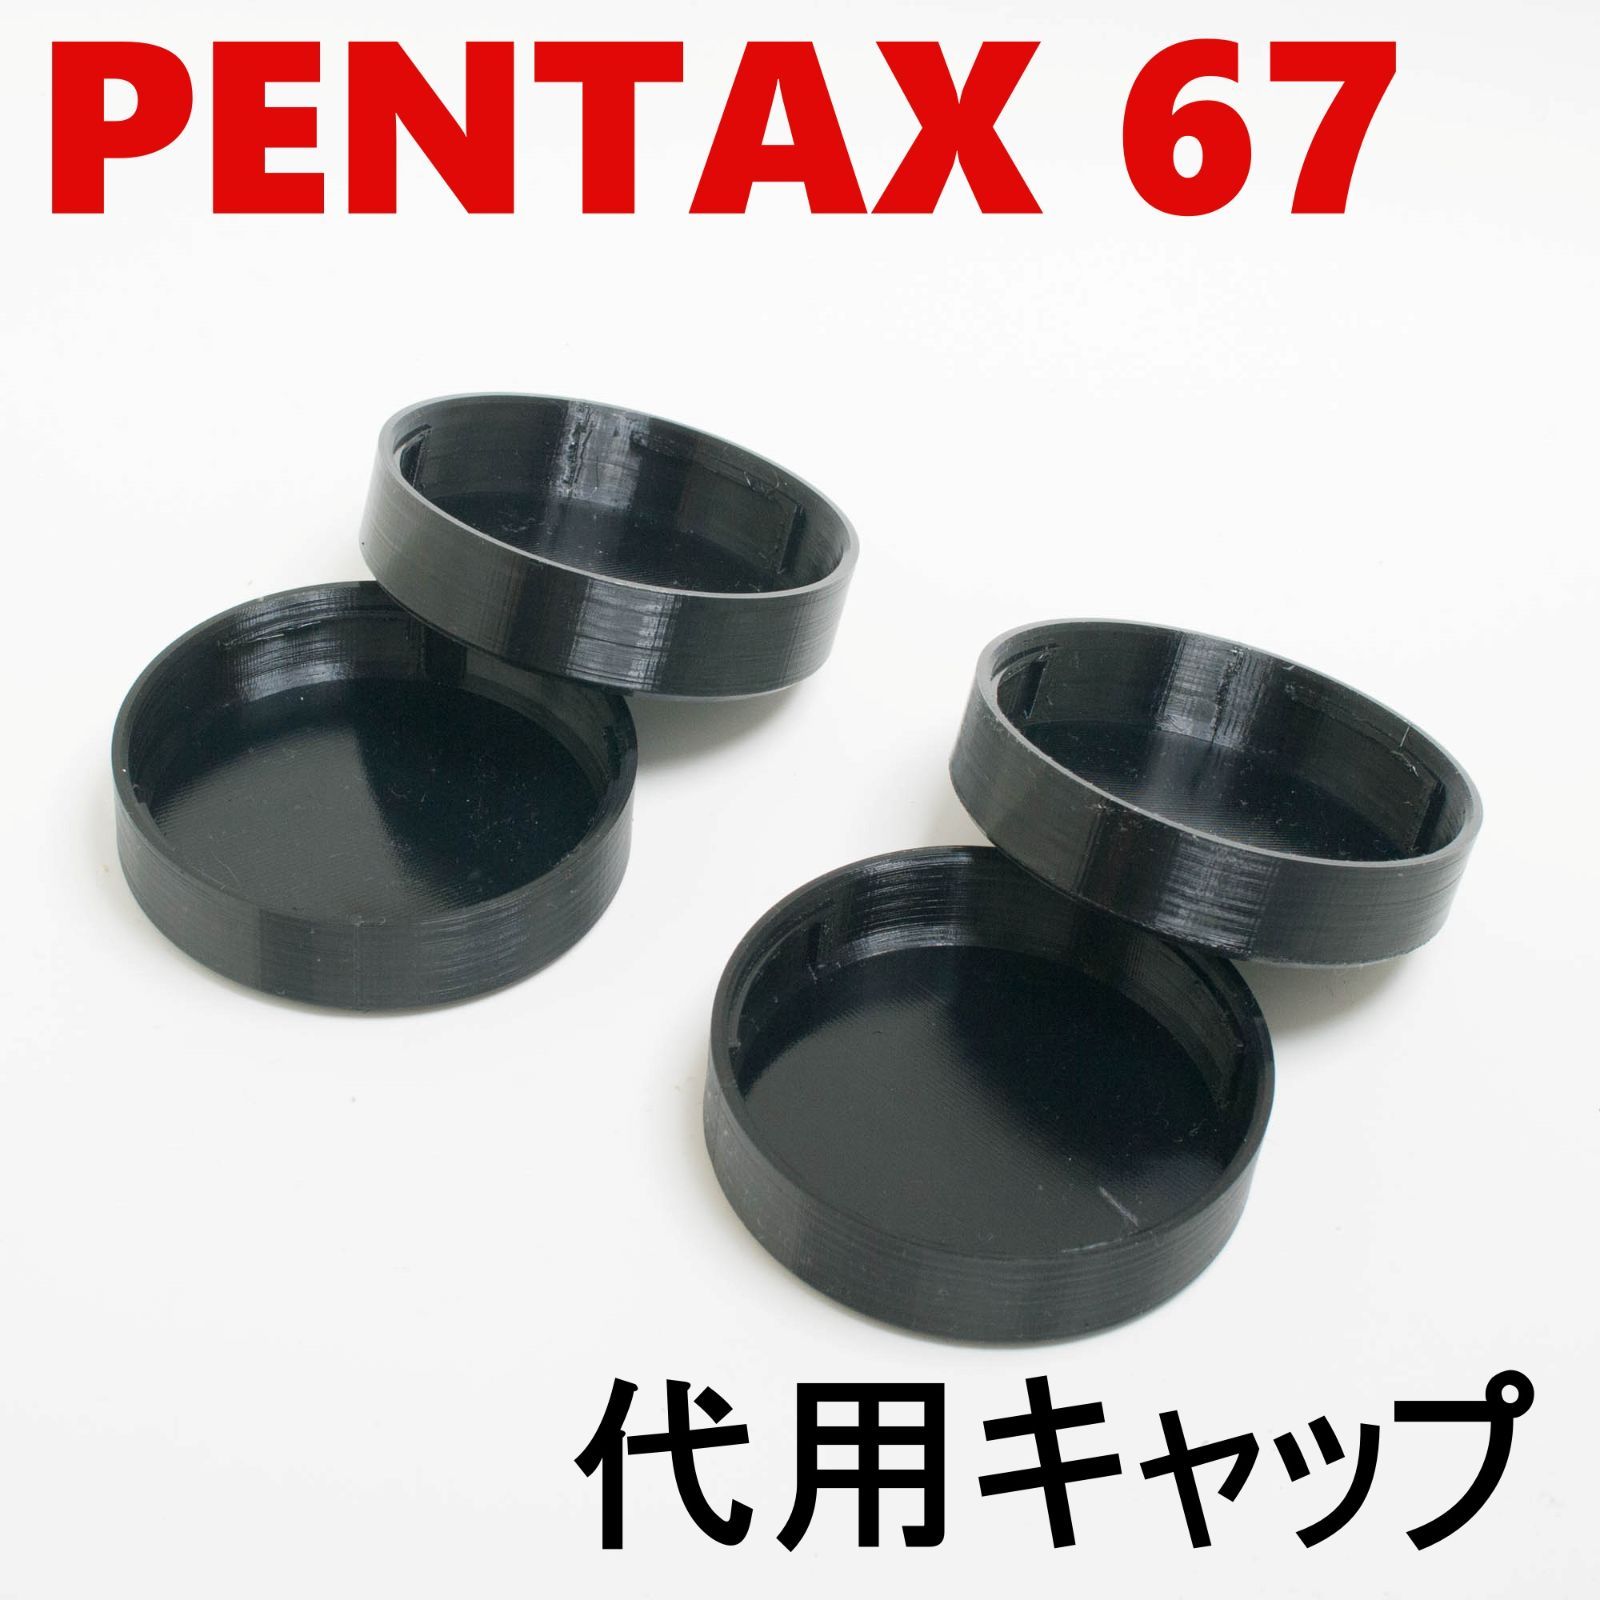 ペンタックス67 6x7 代用レンズリアキャップ 4個 セット - メルカリ